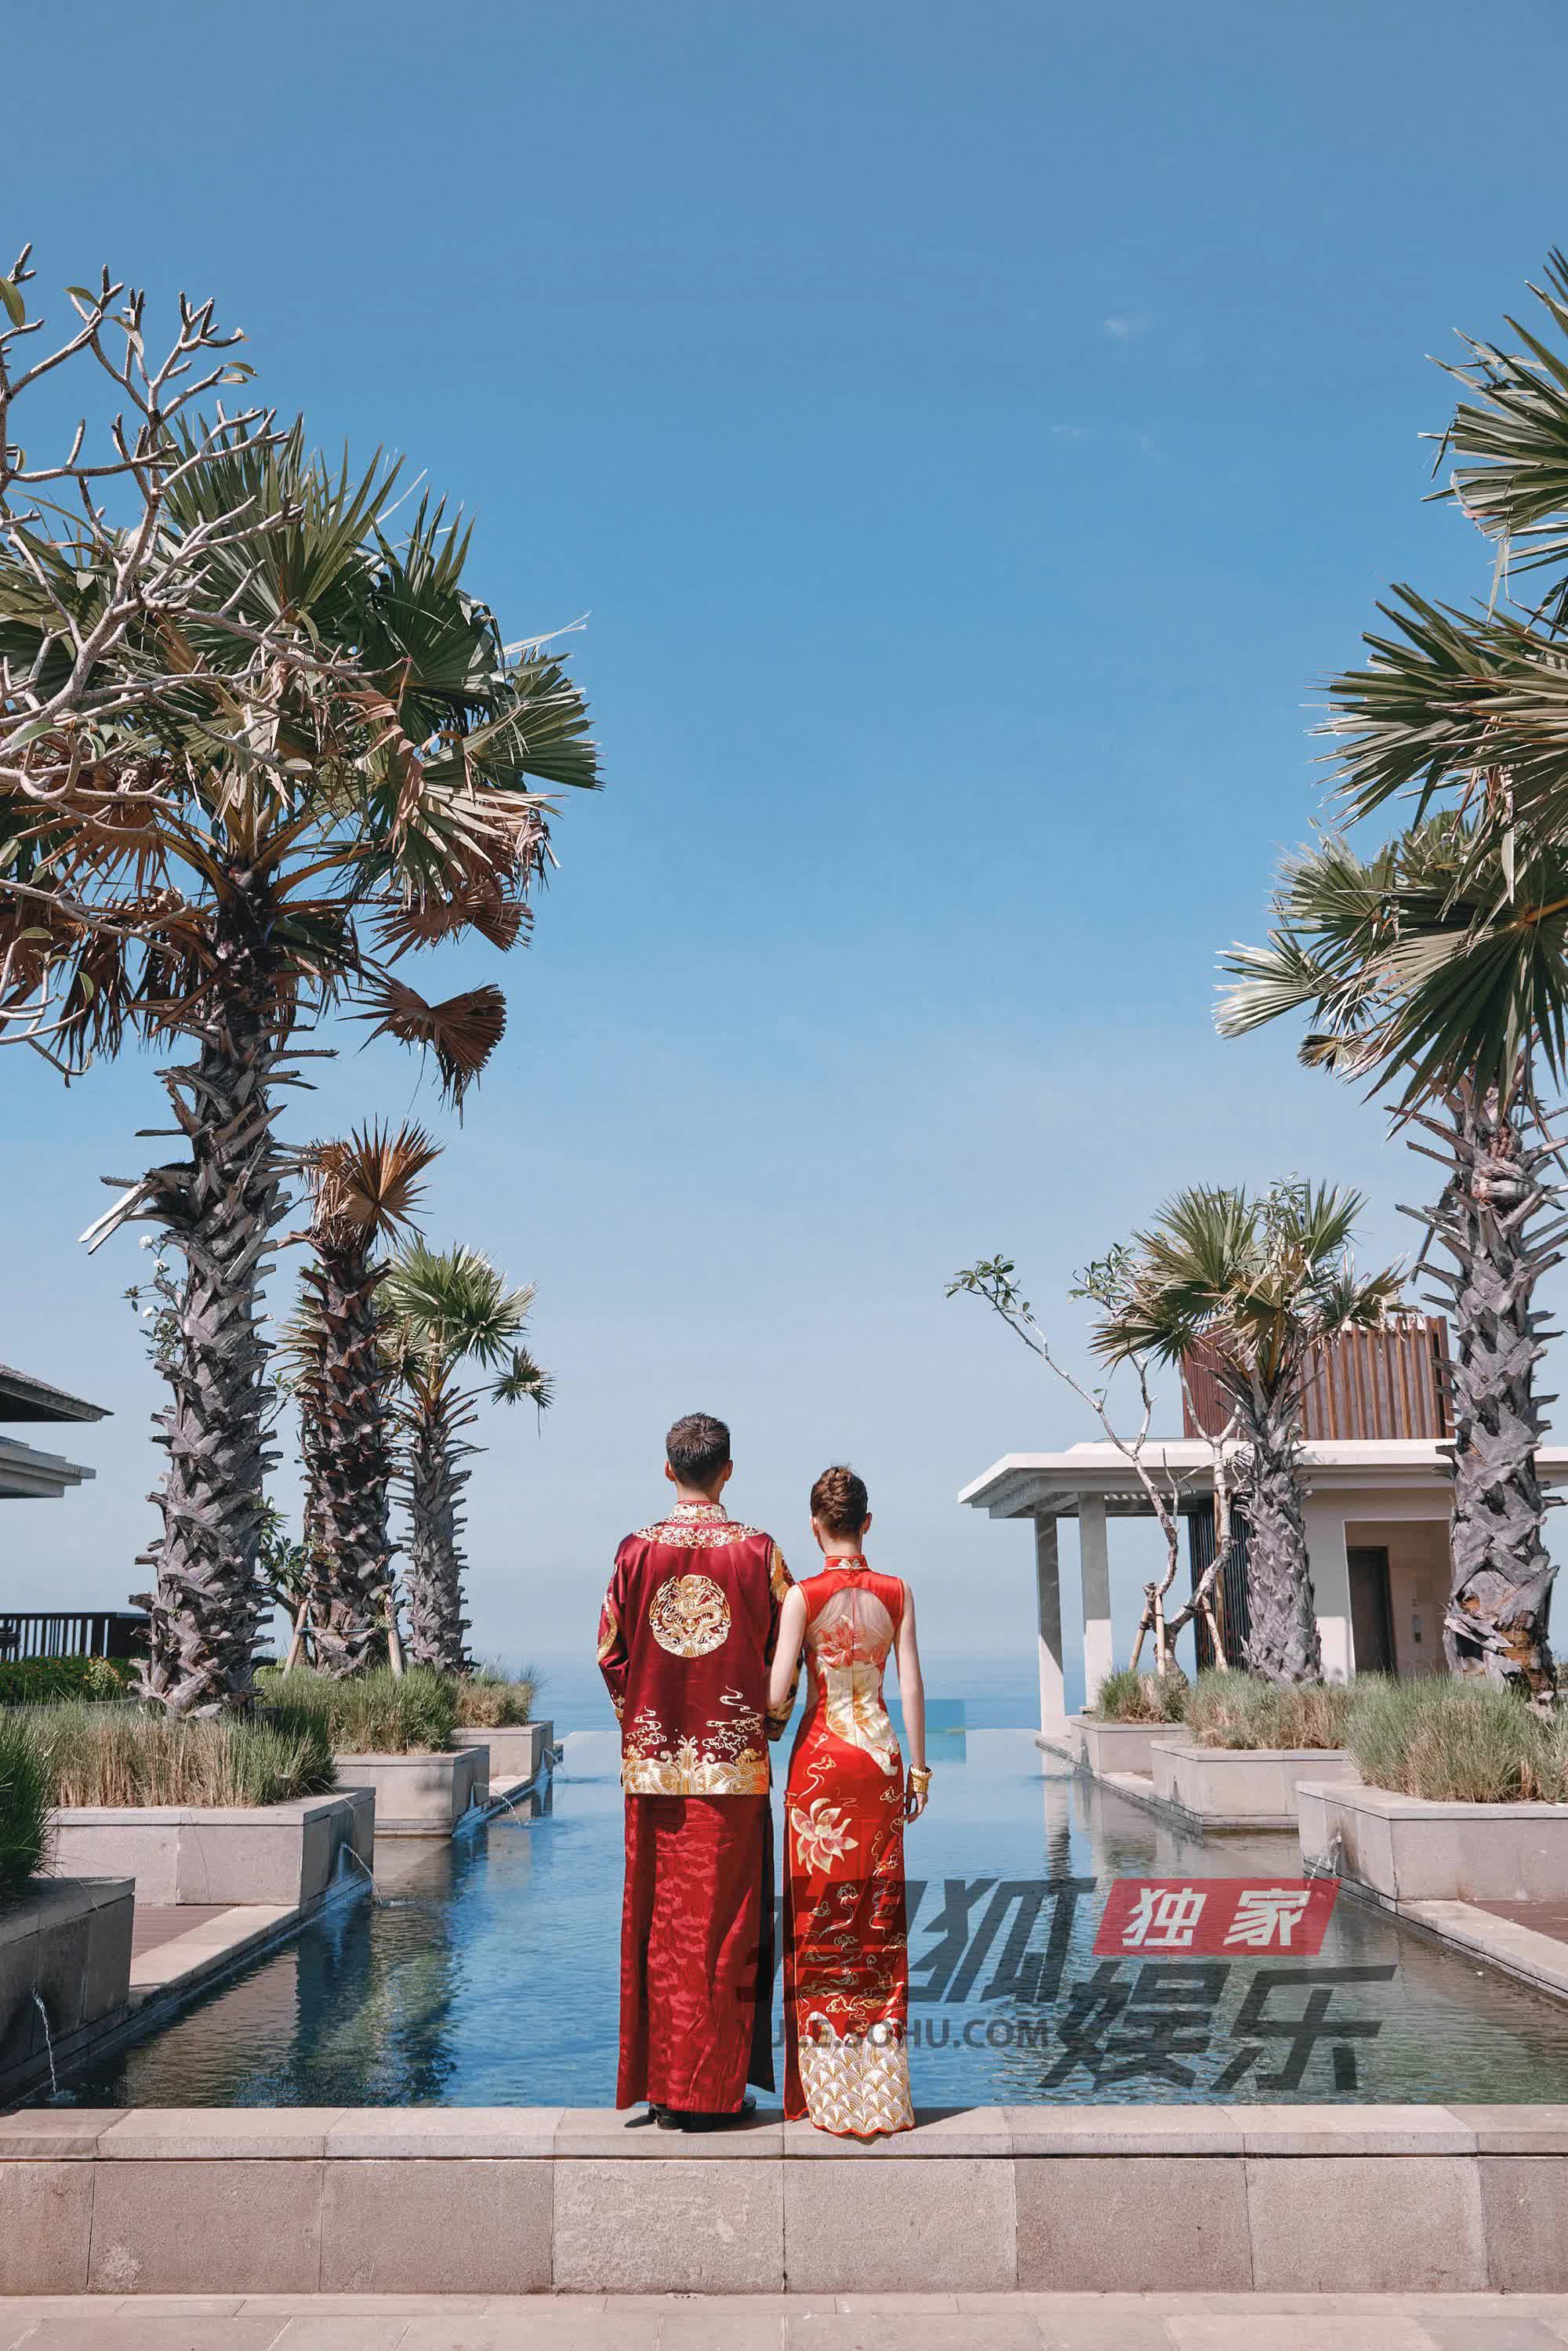 Đám cưới Đậu Kiêu và ái nữ vua sòng bài bắt đầu: Cô dâu chú rể biến hôn lễ truyền thống thành cảnh phim ngay tại Bali! - Ảnh 7.